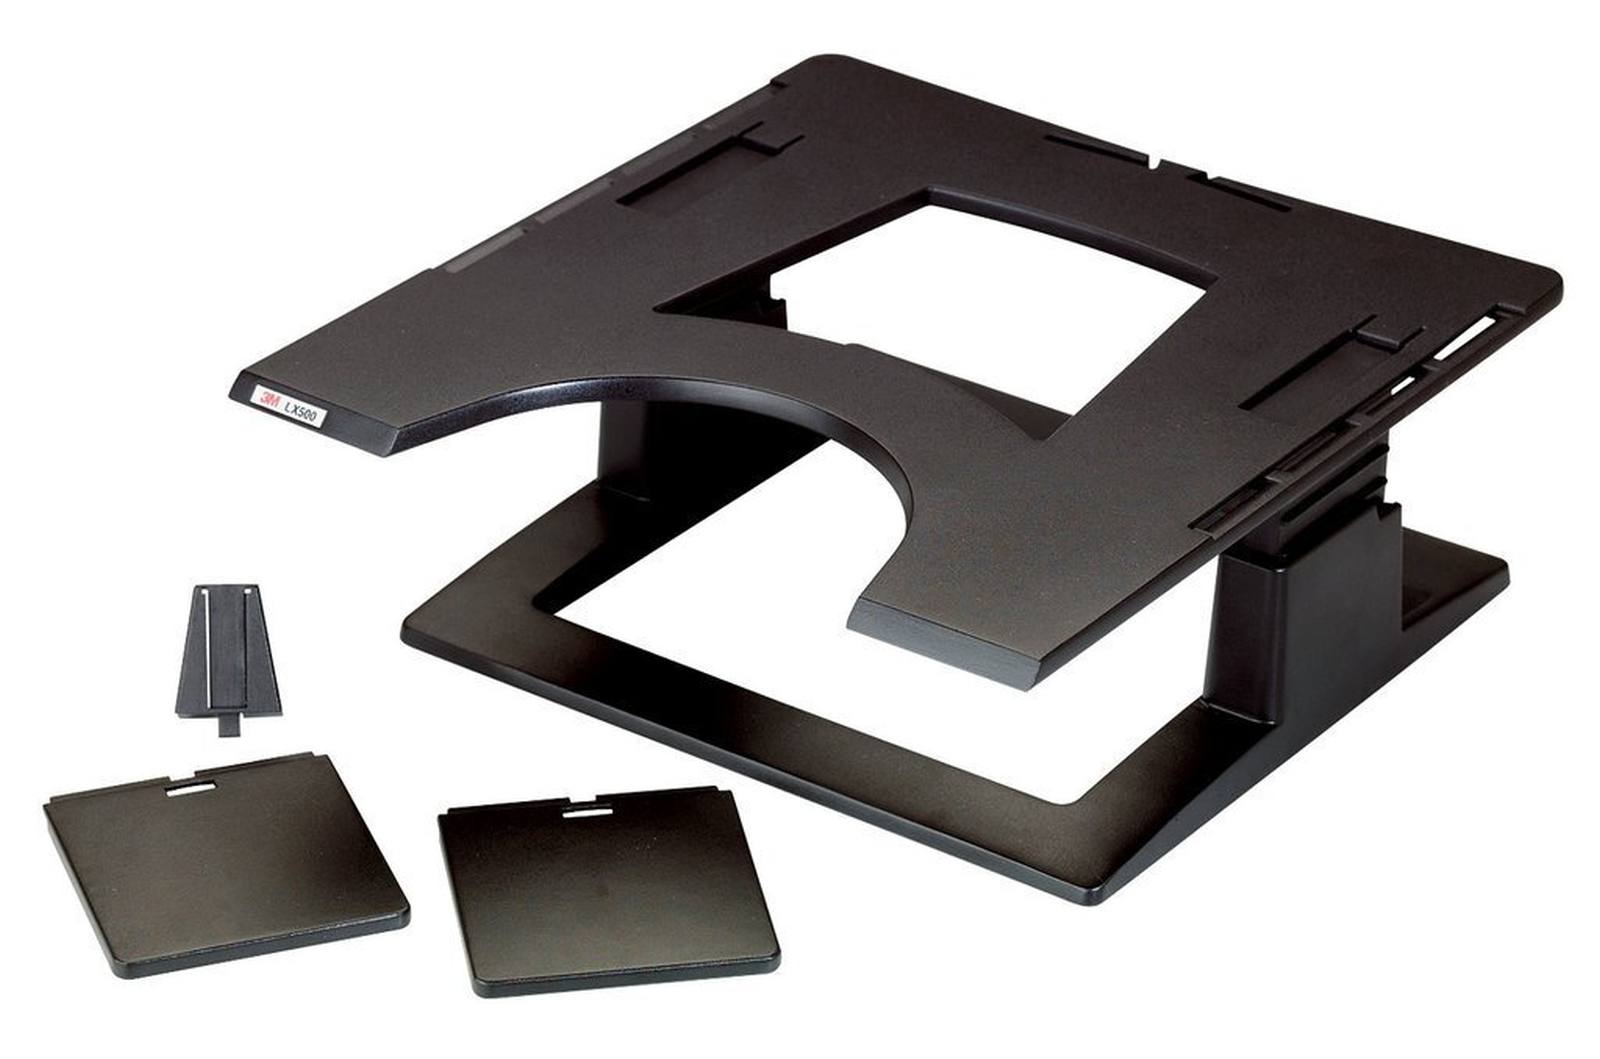 3M Notebook-Ständer LX500, 32,0 cm x 32,0 cm x 10,2 - 15,2 cm, schwarz, 1 Notebookständer